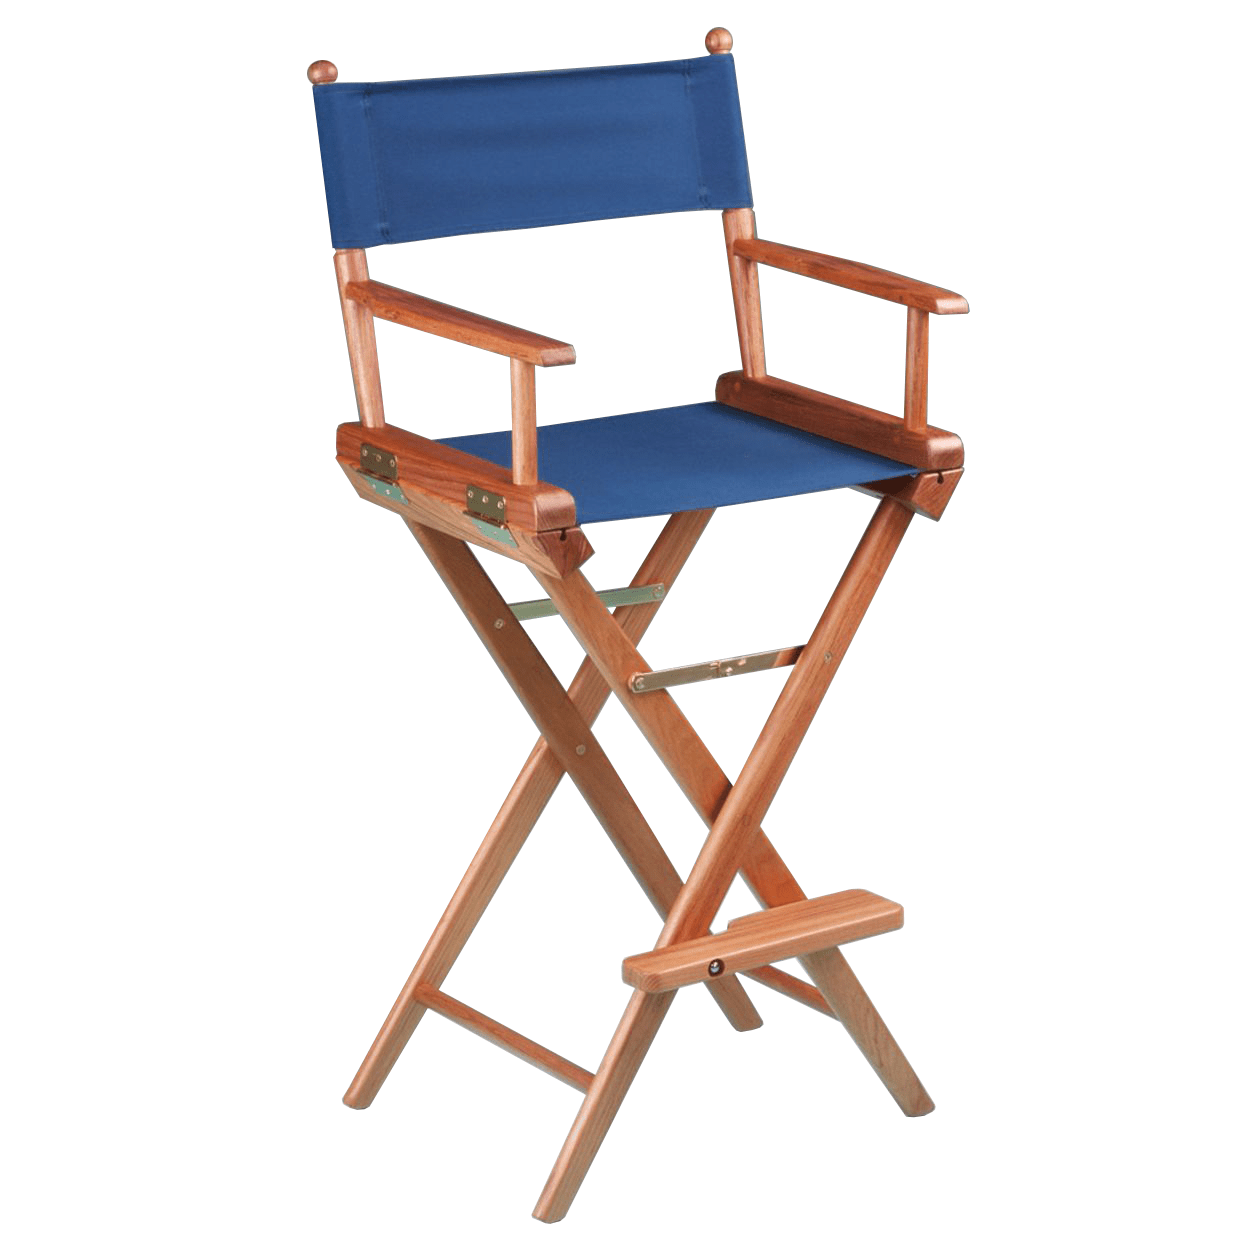 Teak Captain's Chair - Blue Seat Cover